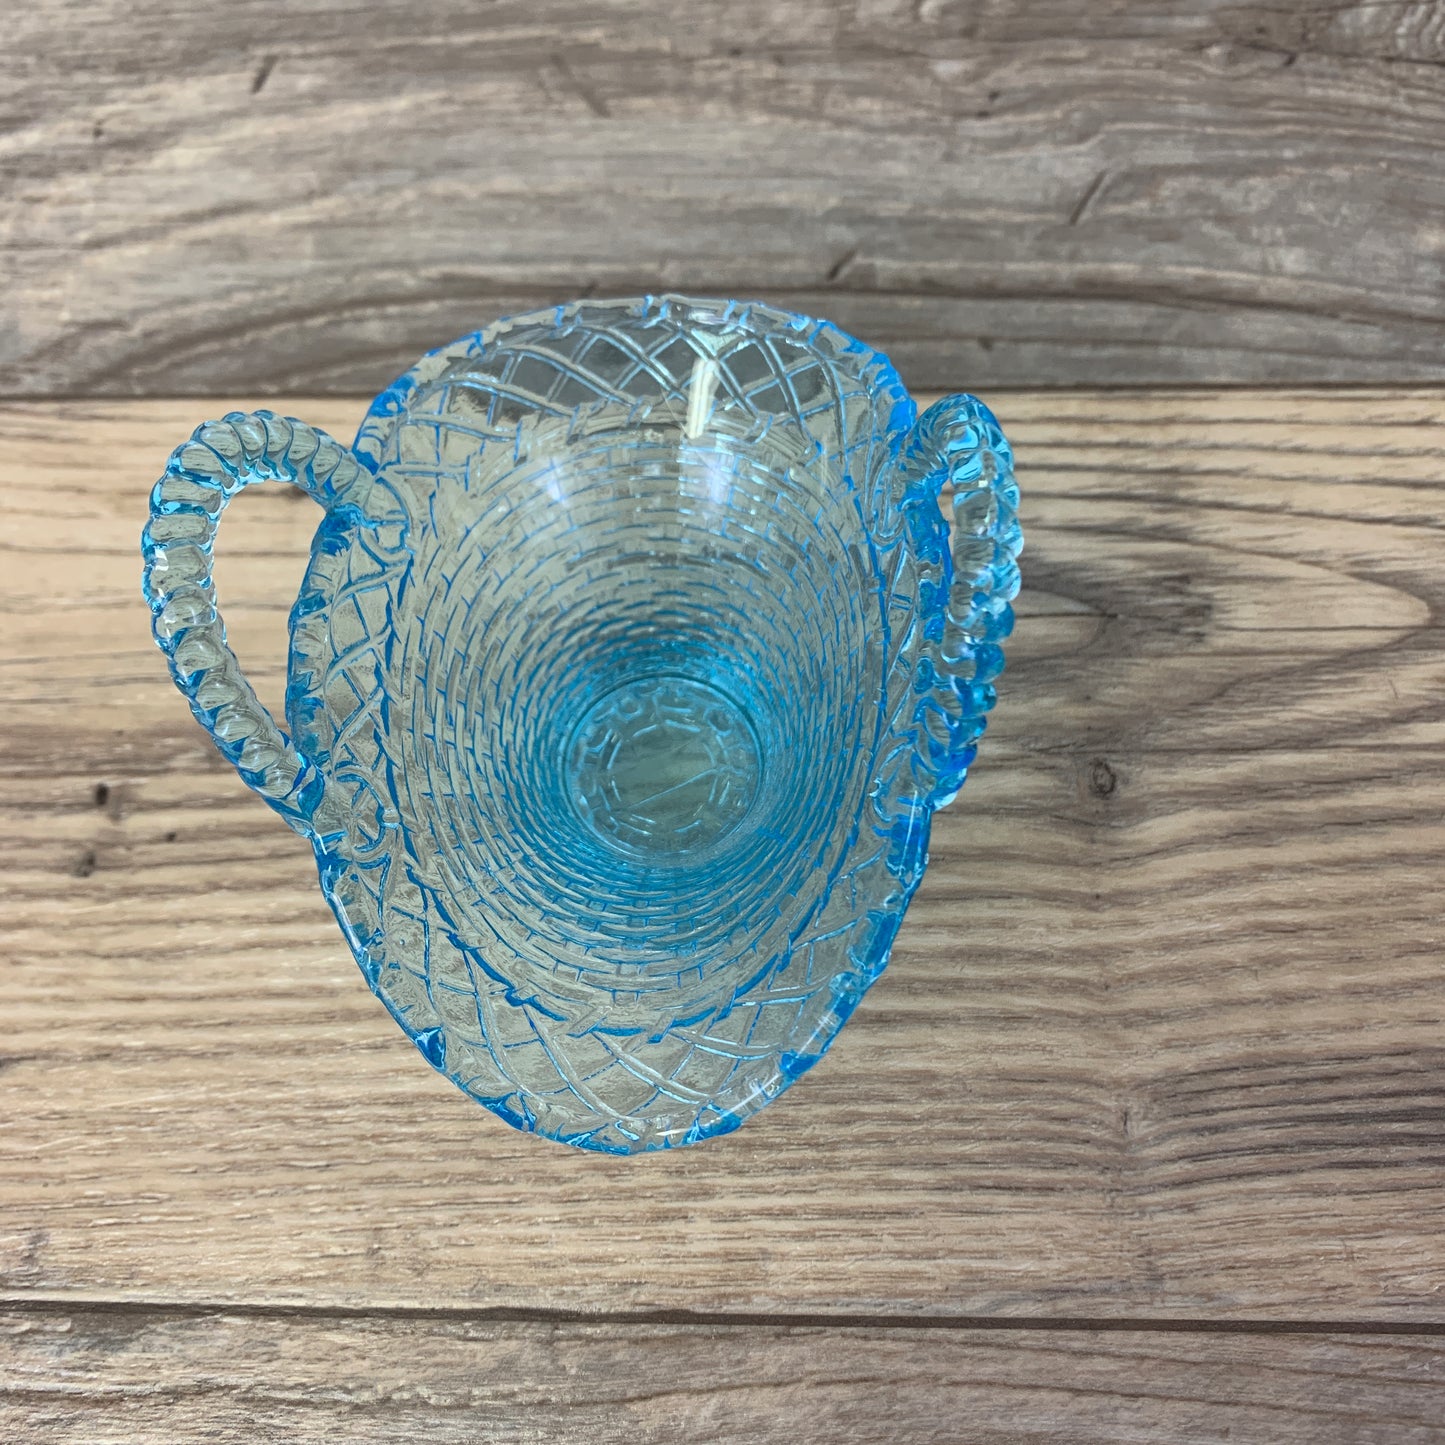 Vintage Blue Pressed Glass Basket Candleholder, Vintage Home Decor